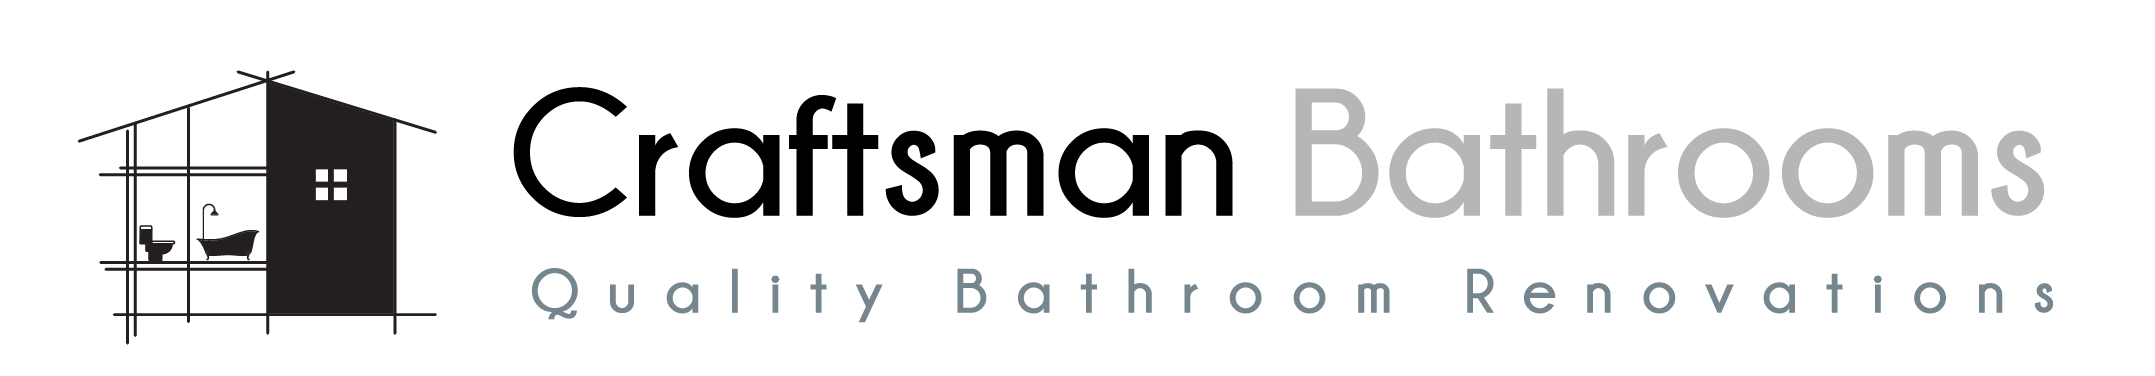 Craftsman Bathrooms